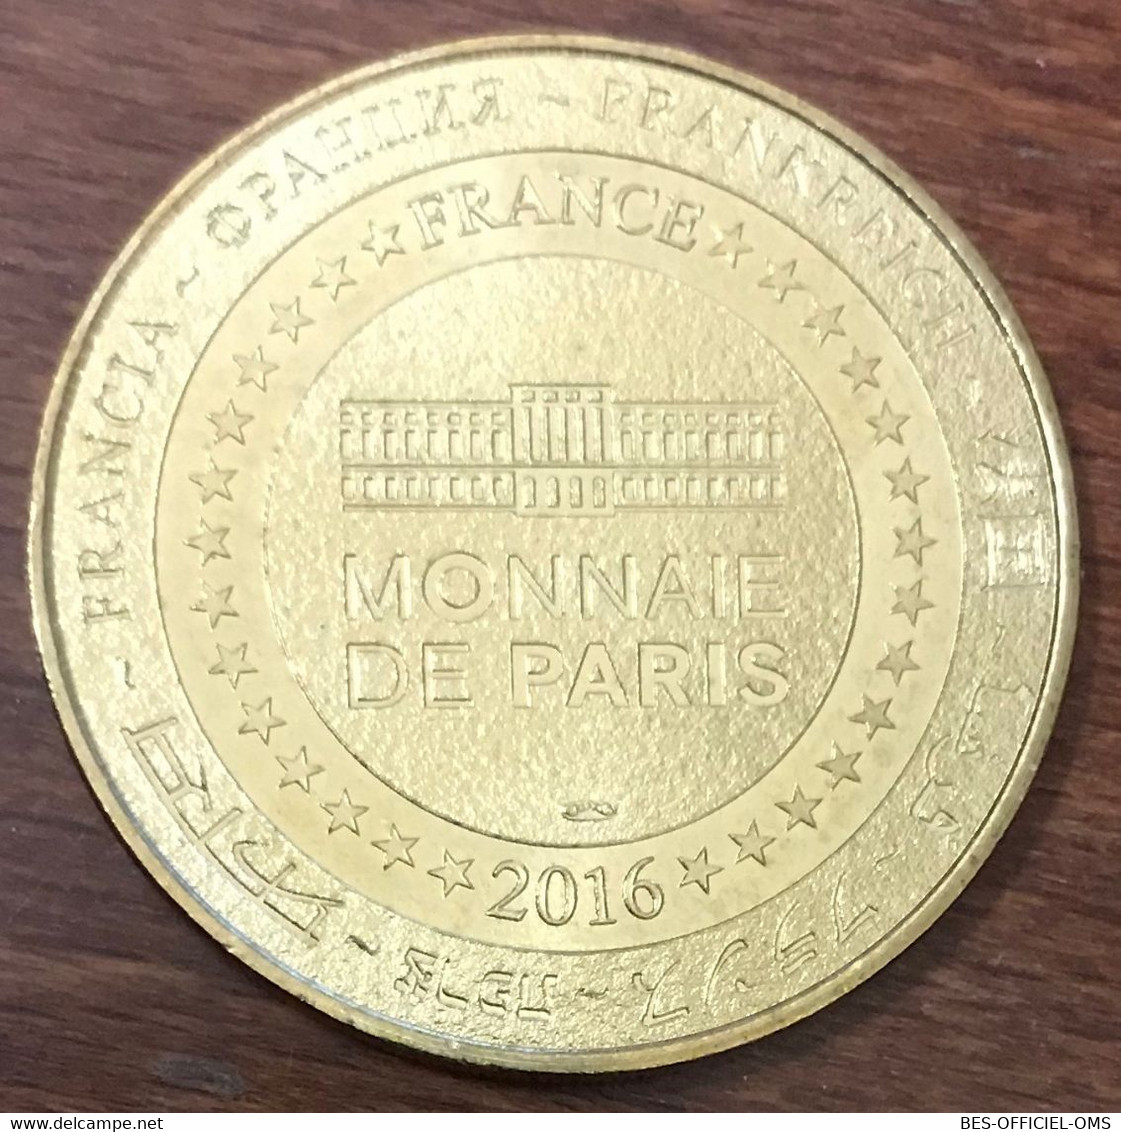 34 PEZENAS SITE D'EXCEPTION MDP 2016 MÉDAILLE SOUVENIR MONNAIE DE PARIS JETON TOURISTIQUE TOKENS MEDALS COINS - 2016